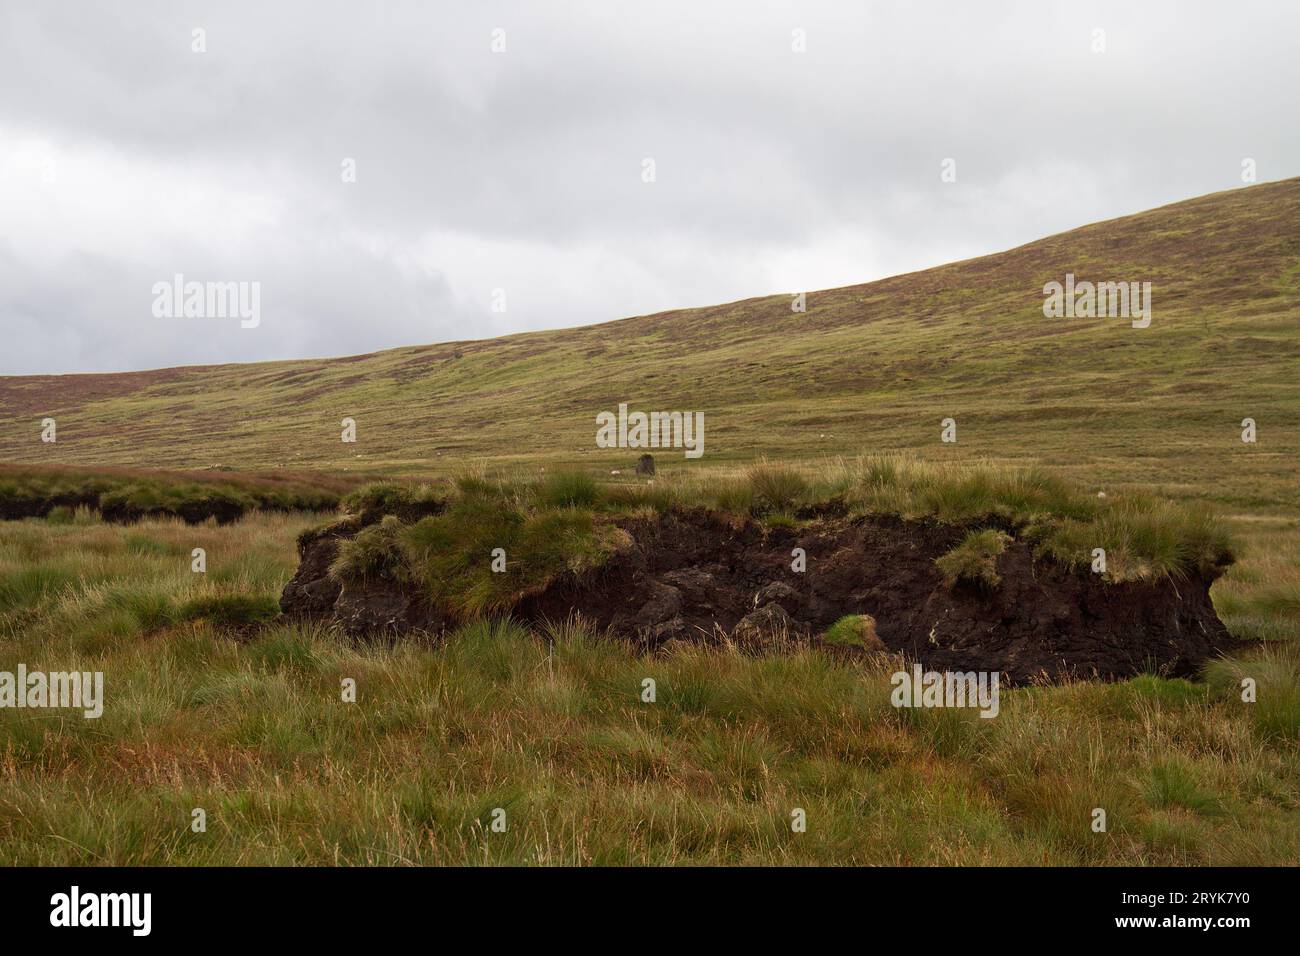 Dernier vestige d'une couche de tourbe excavée dans les landes dans les montagnes de Comeragh, Irlande Banque D'Images